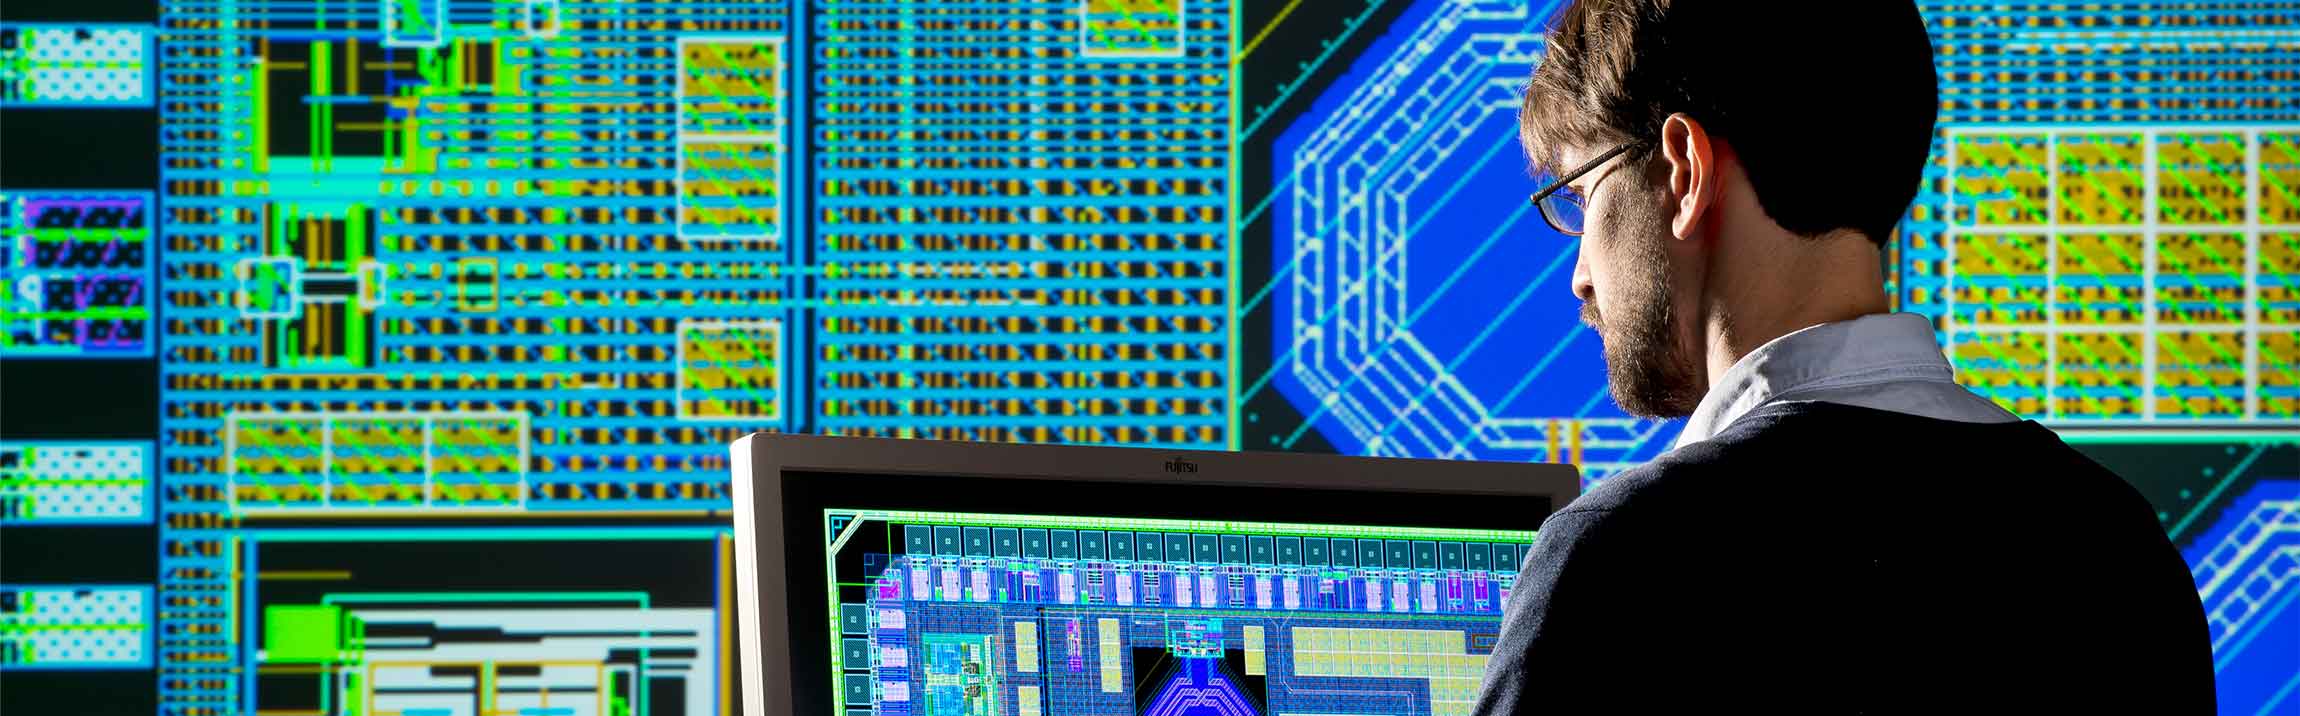 IC Design integrierter Schaltkreise am Fraunhofer EMFT